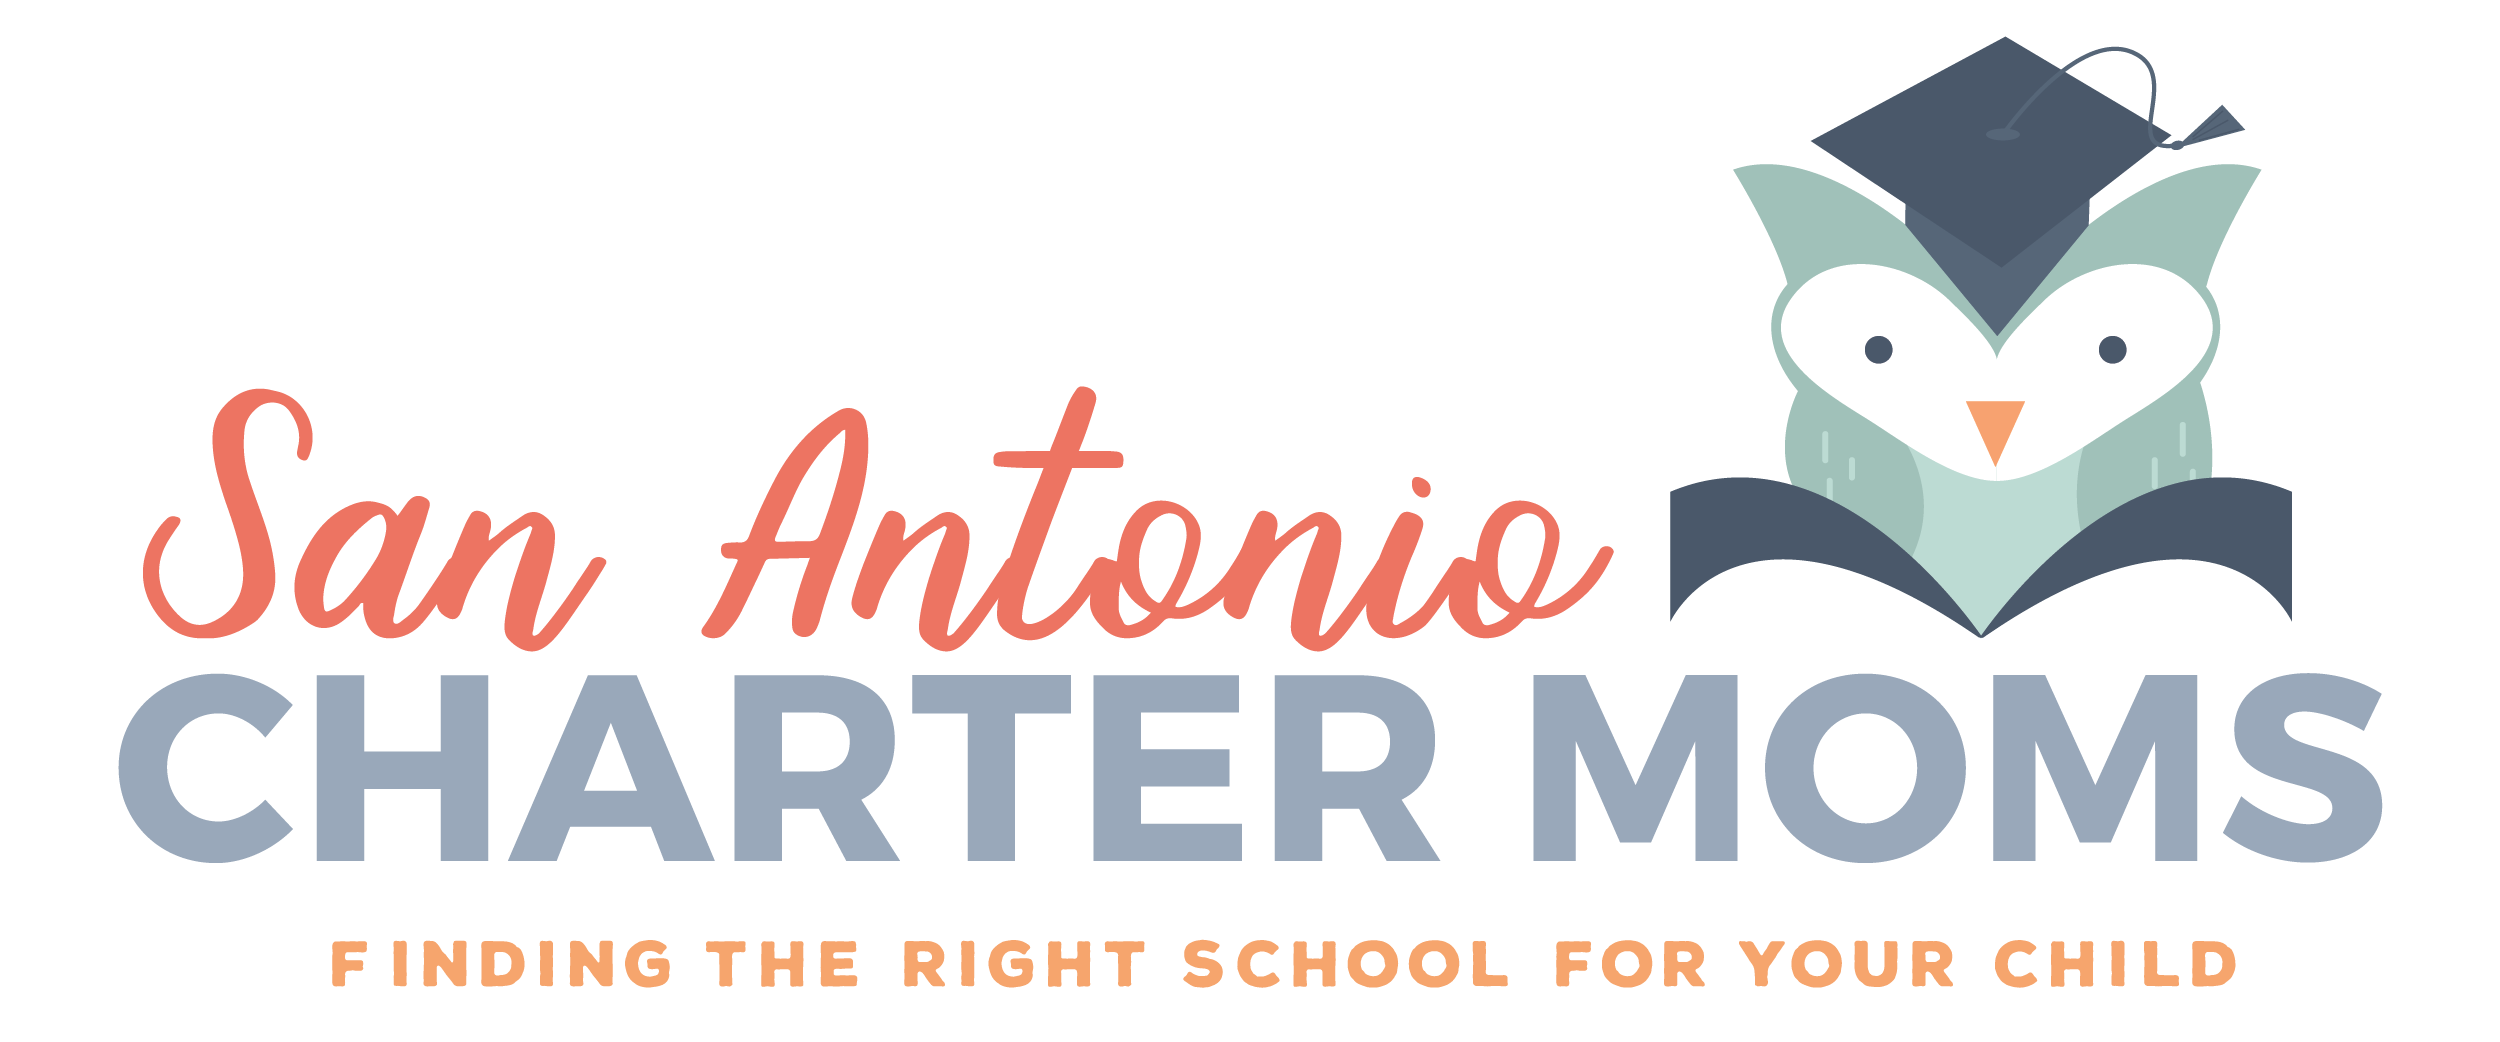 San Antonio Charter Moms La Prensa Texas